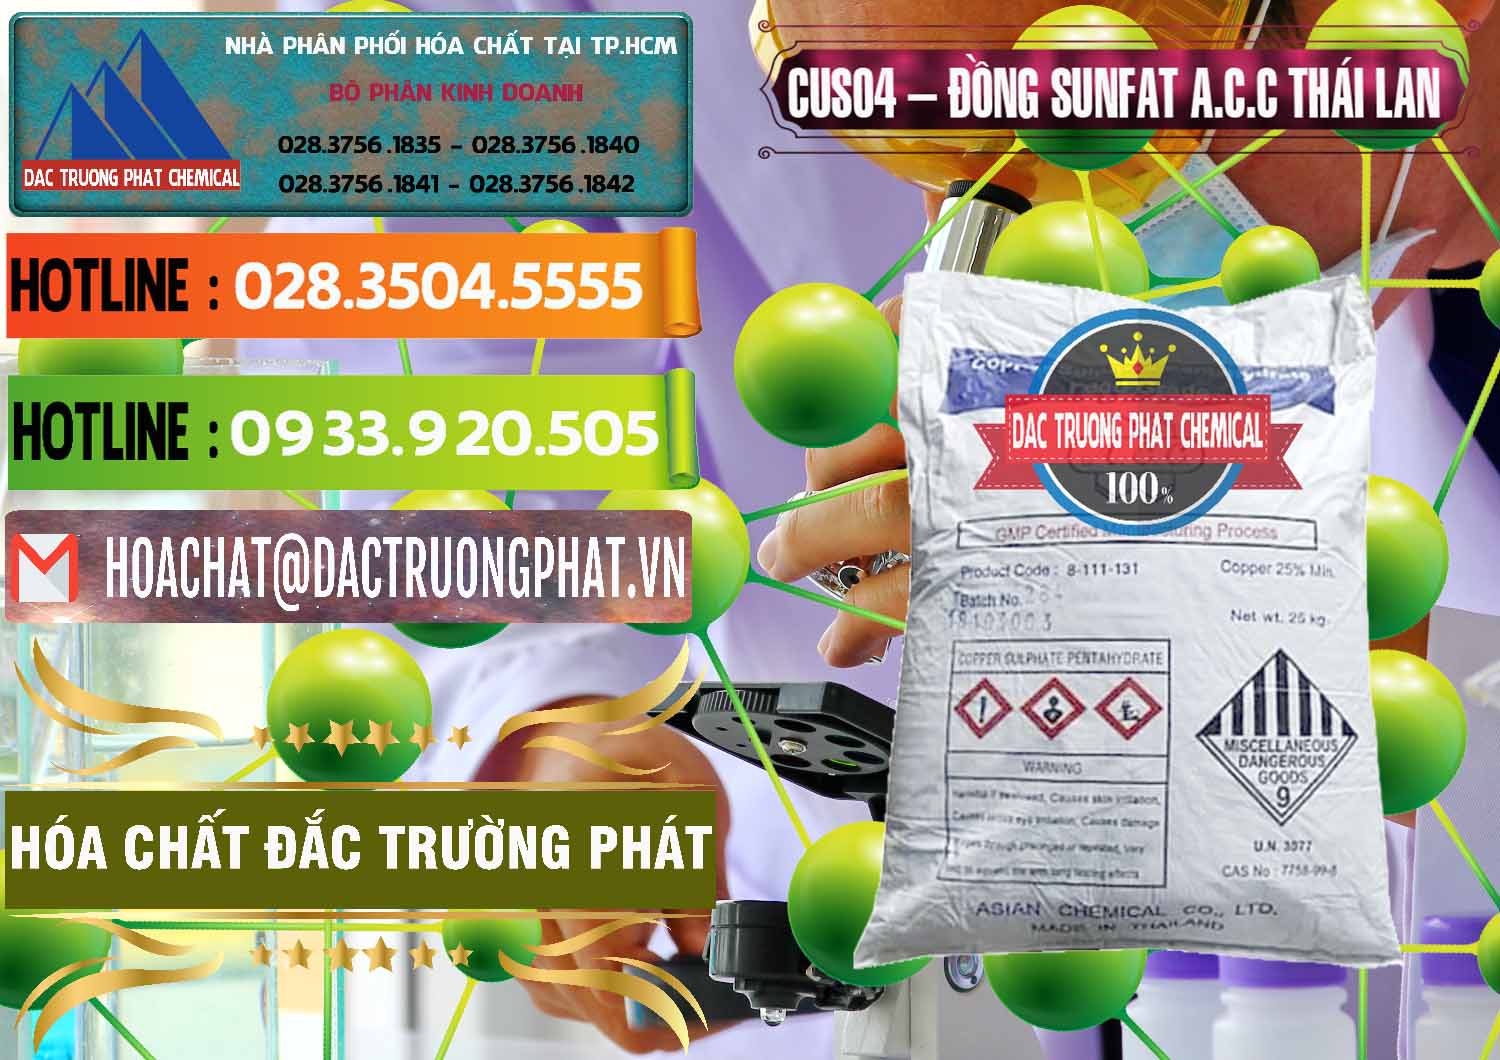 Chuyên bán & cung cấp CuSO4 – Đồng Sunfat A.C.C Thái Lan - 0249 - Kinh doanh _ phân phối hóa chất tại TP.HCM - cungcaphoachat.com.vn